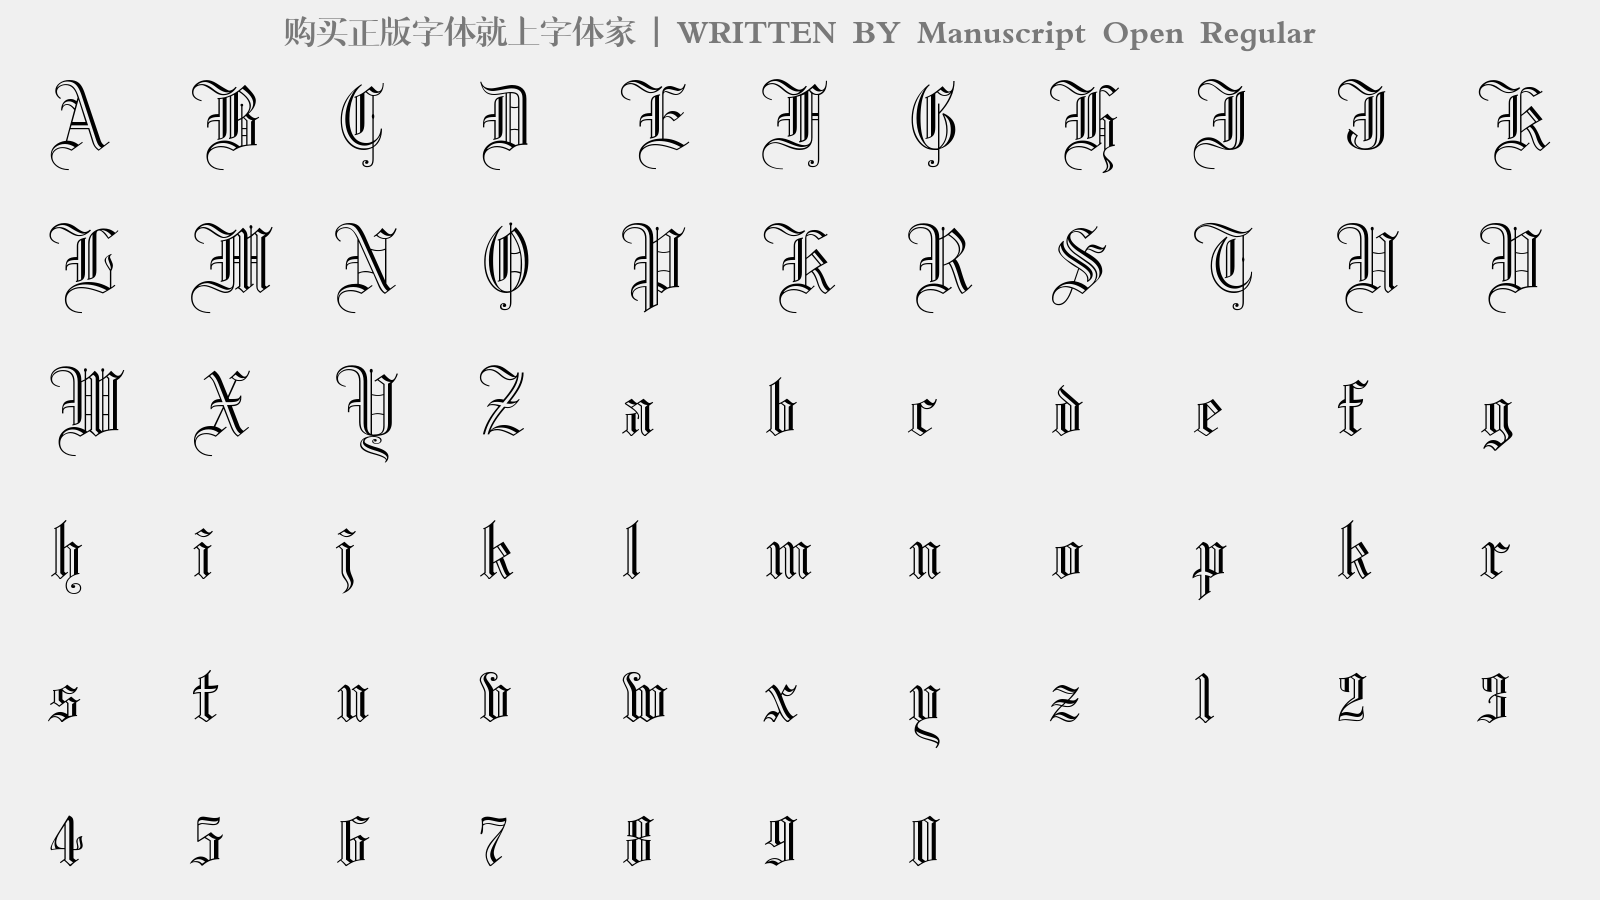 Manuscript Open Regular - 大写字母/小写字母/数字